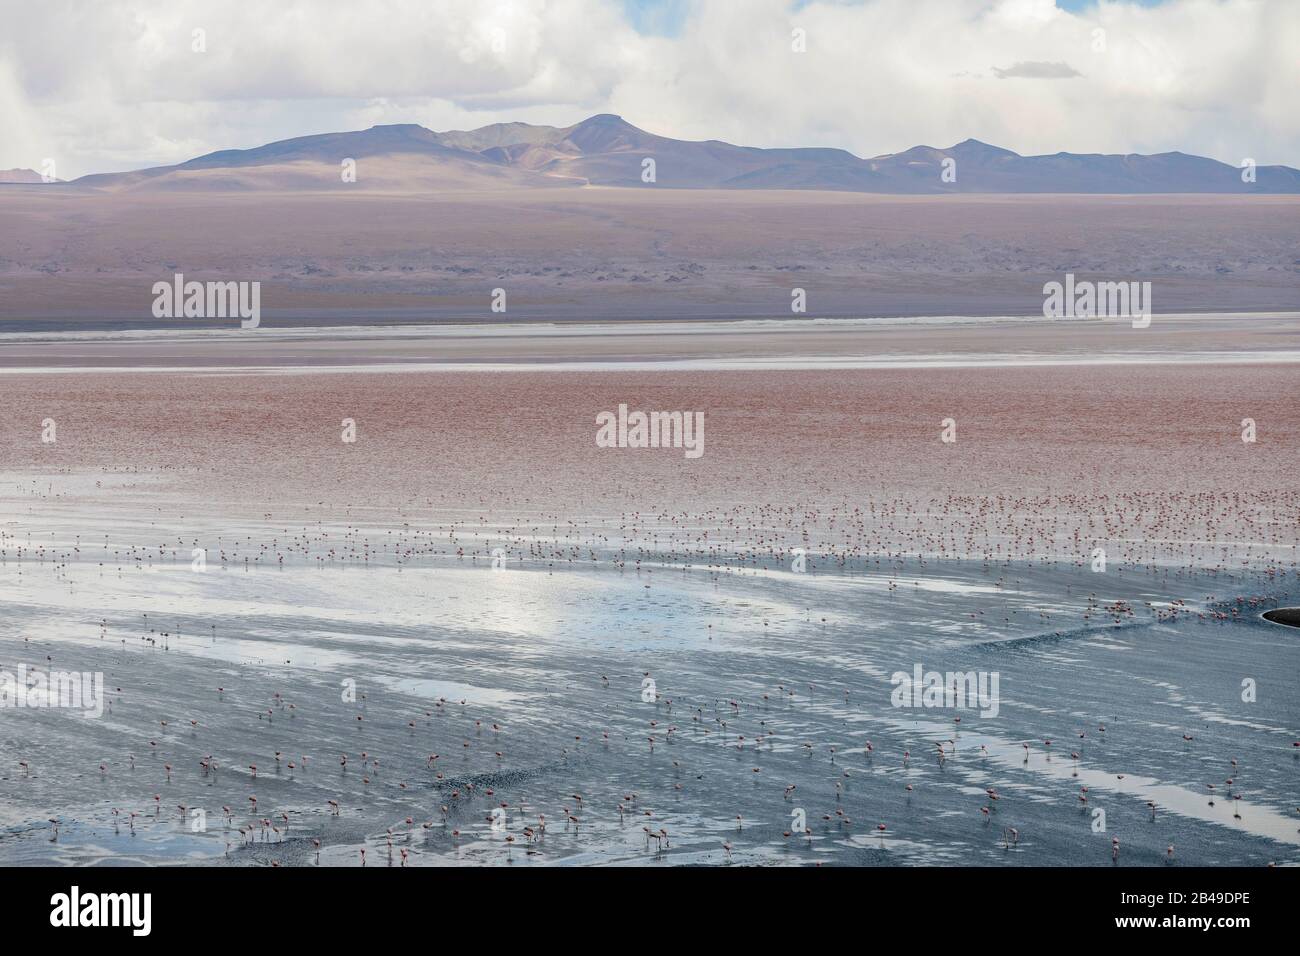 Fenicotteri a Laguna Colorada, un lago di sale a sud-ovest dell'altiplano della Bolivia. Foto Stock